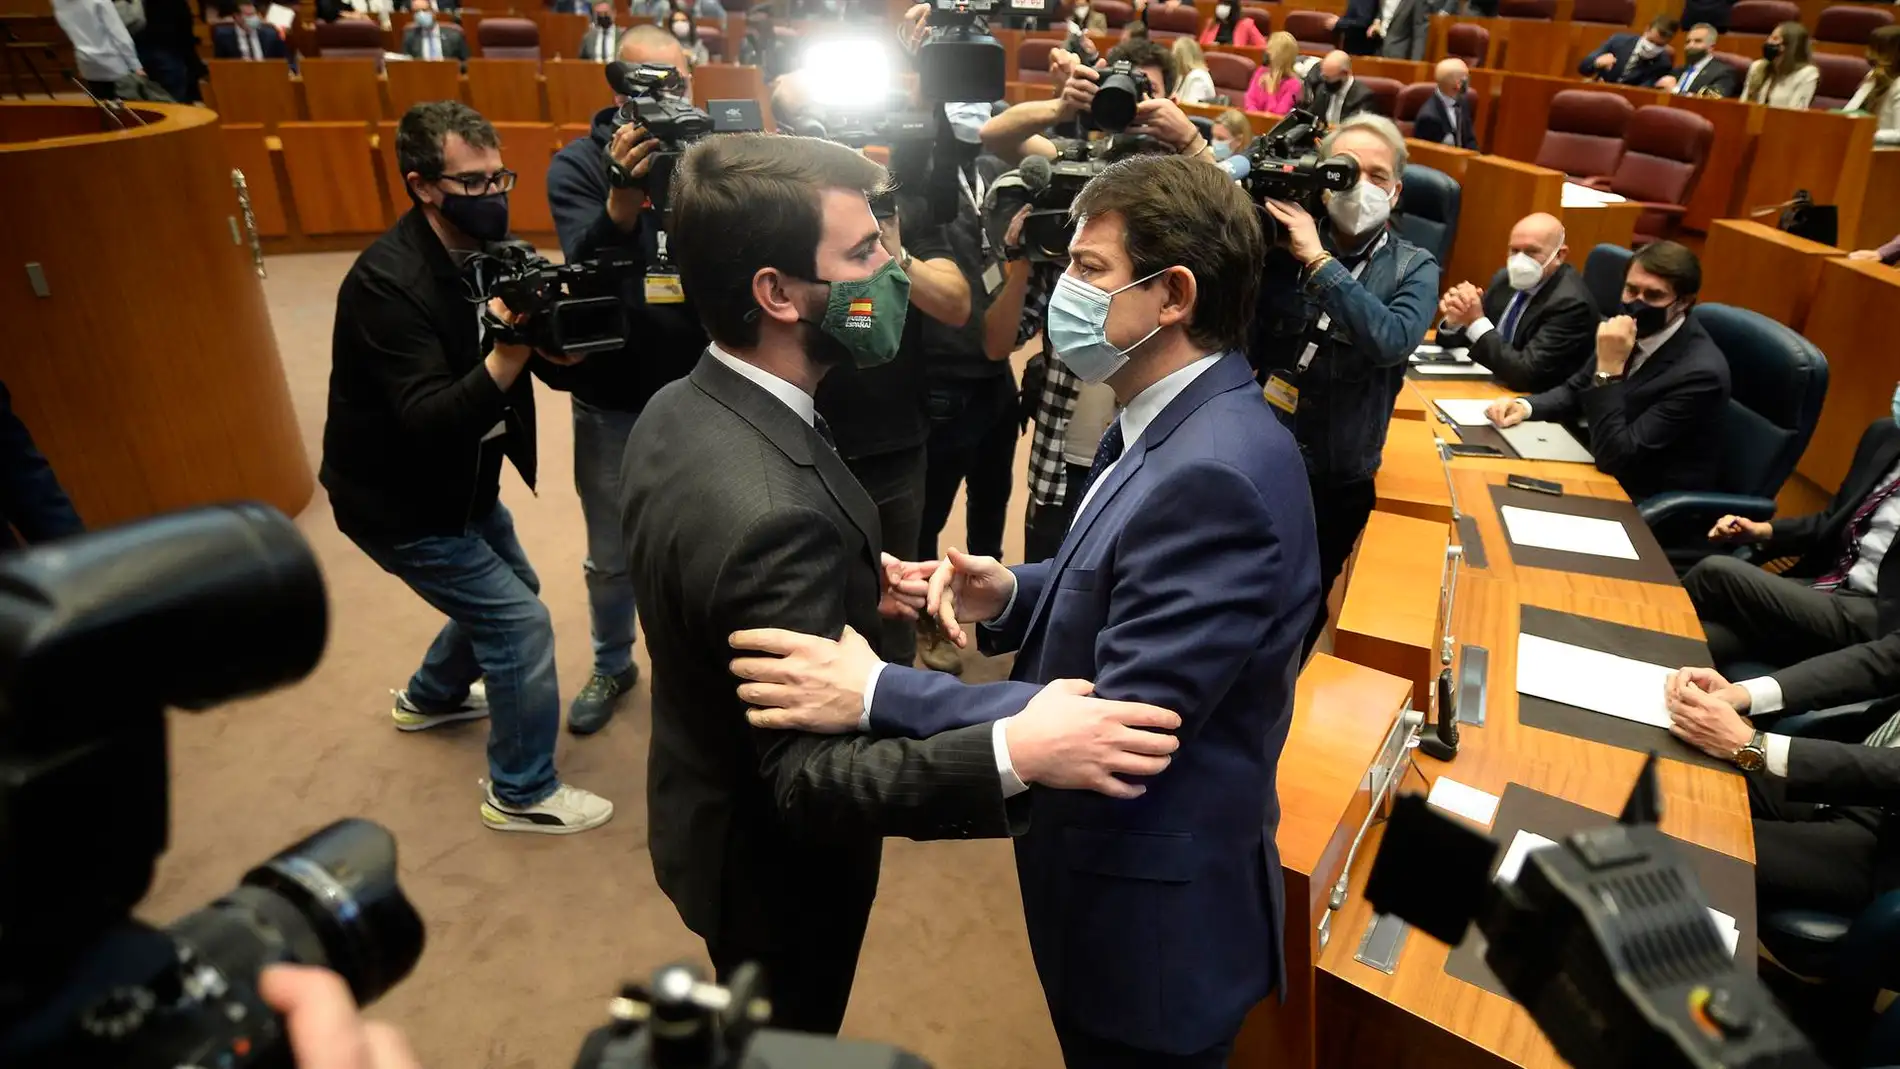 Alfonso Fernández Mañueco (derecha) saluda a Juan García-Gallardo (izquierda) en el pleno. / Efe